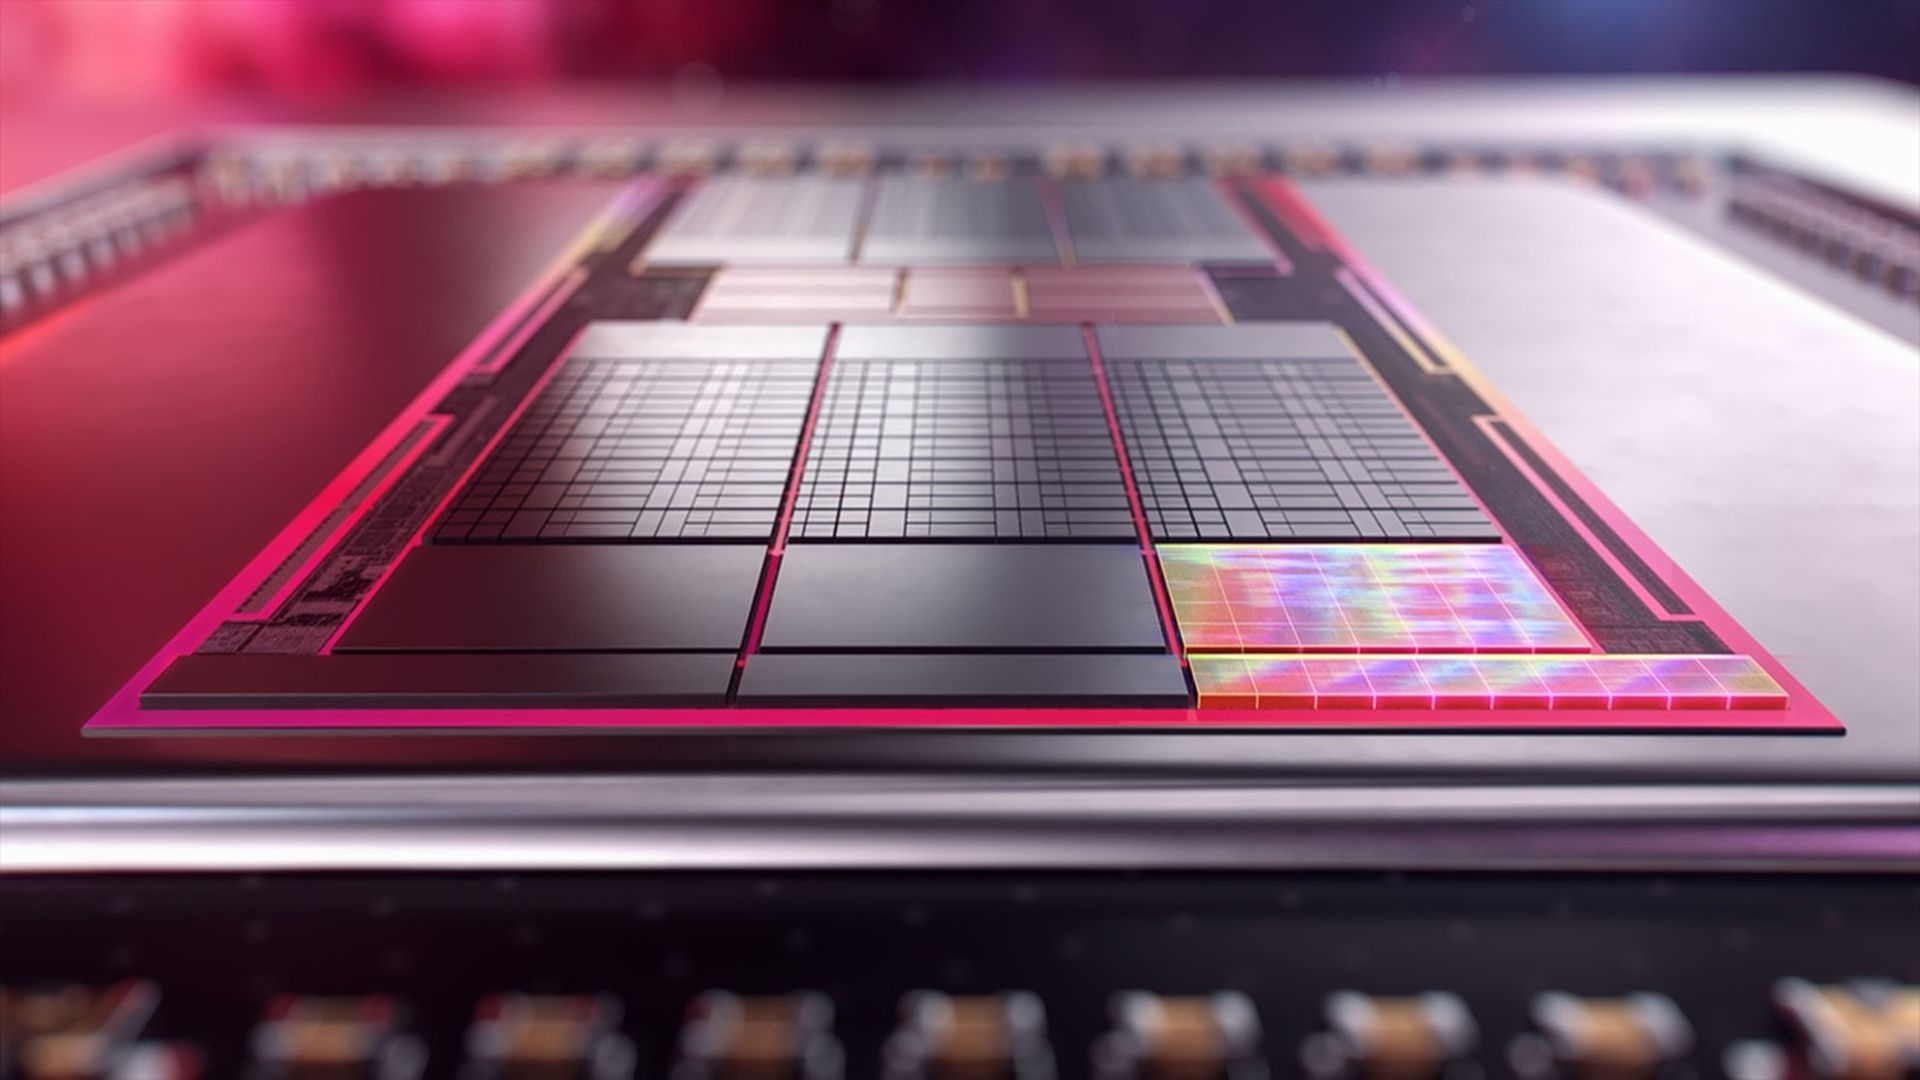 AMD, oyun konsollarına yapay zeka desteği getiriyor